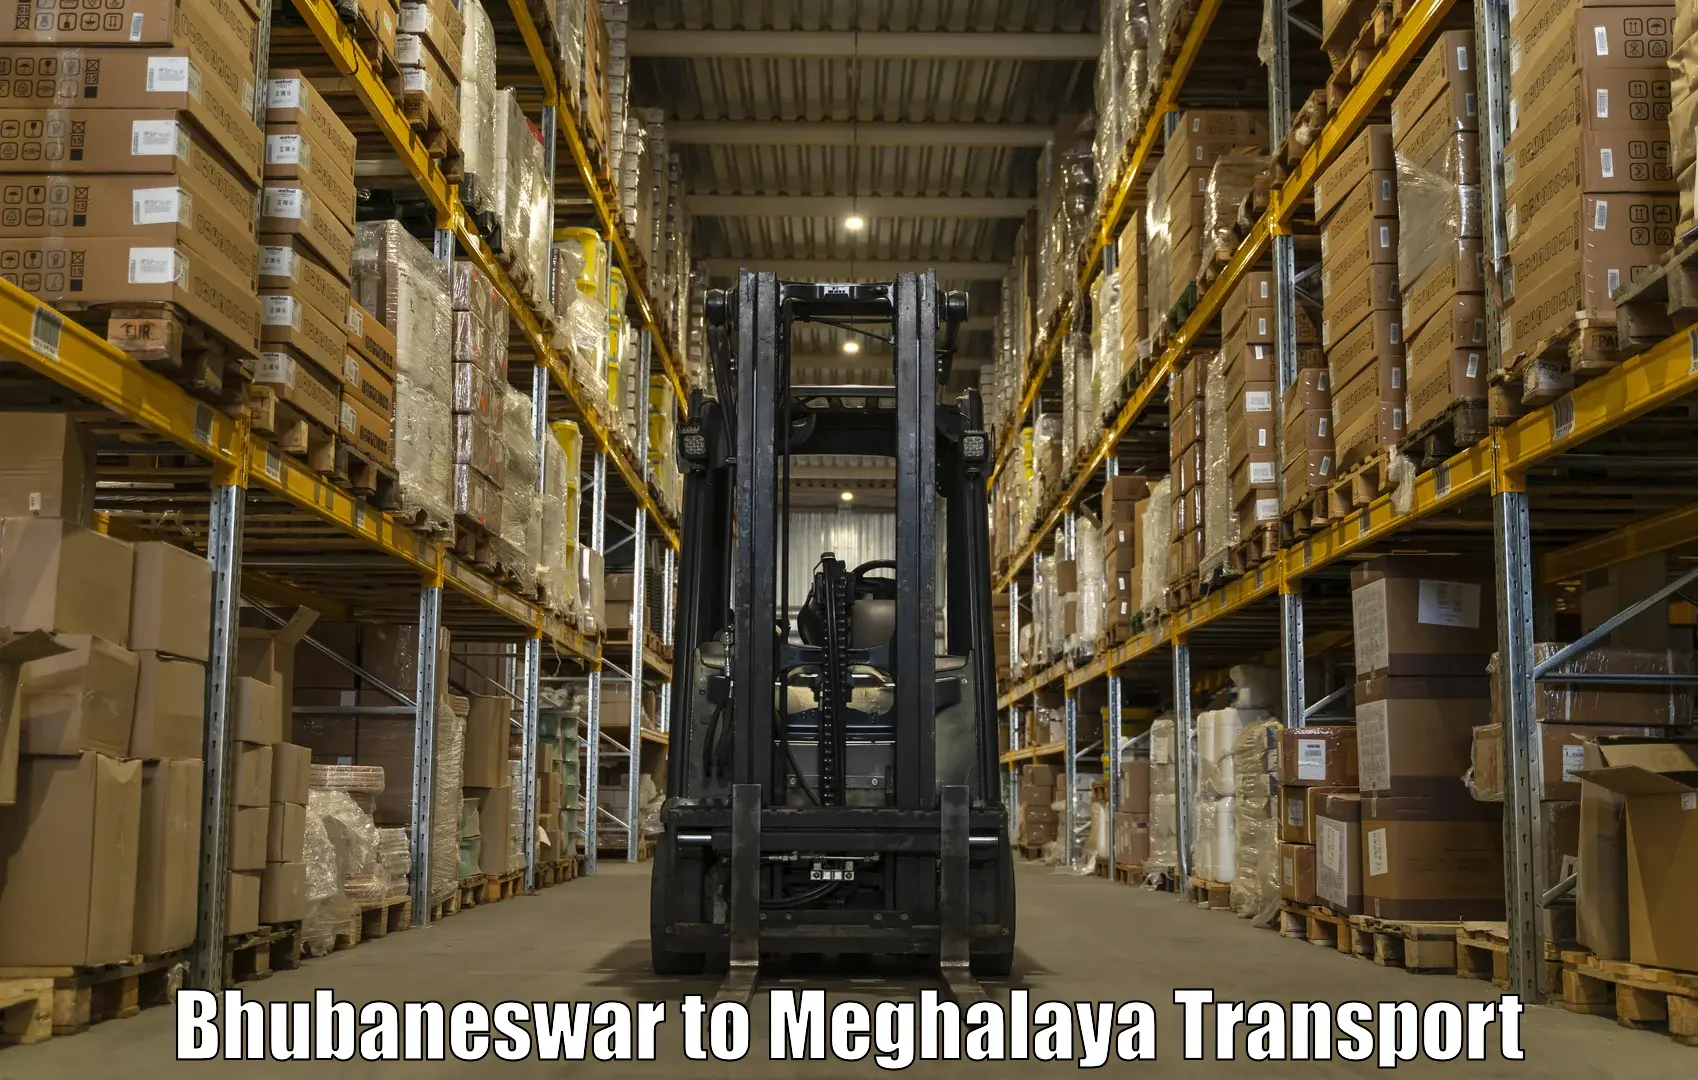 Furniture transport service in Bhubaneswar to Meghalaya